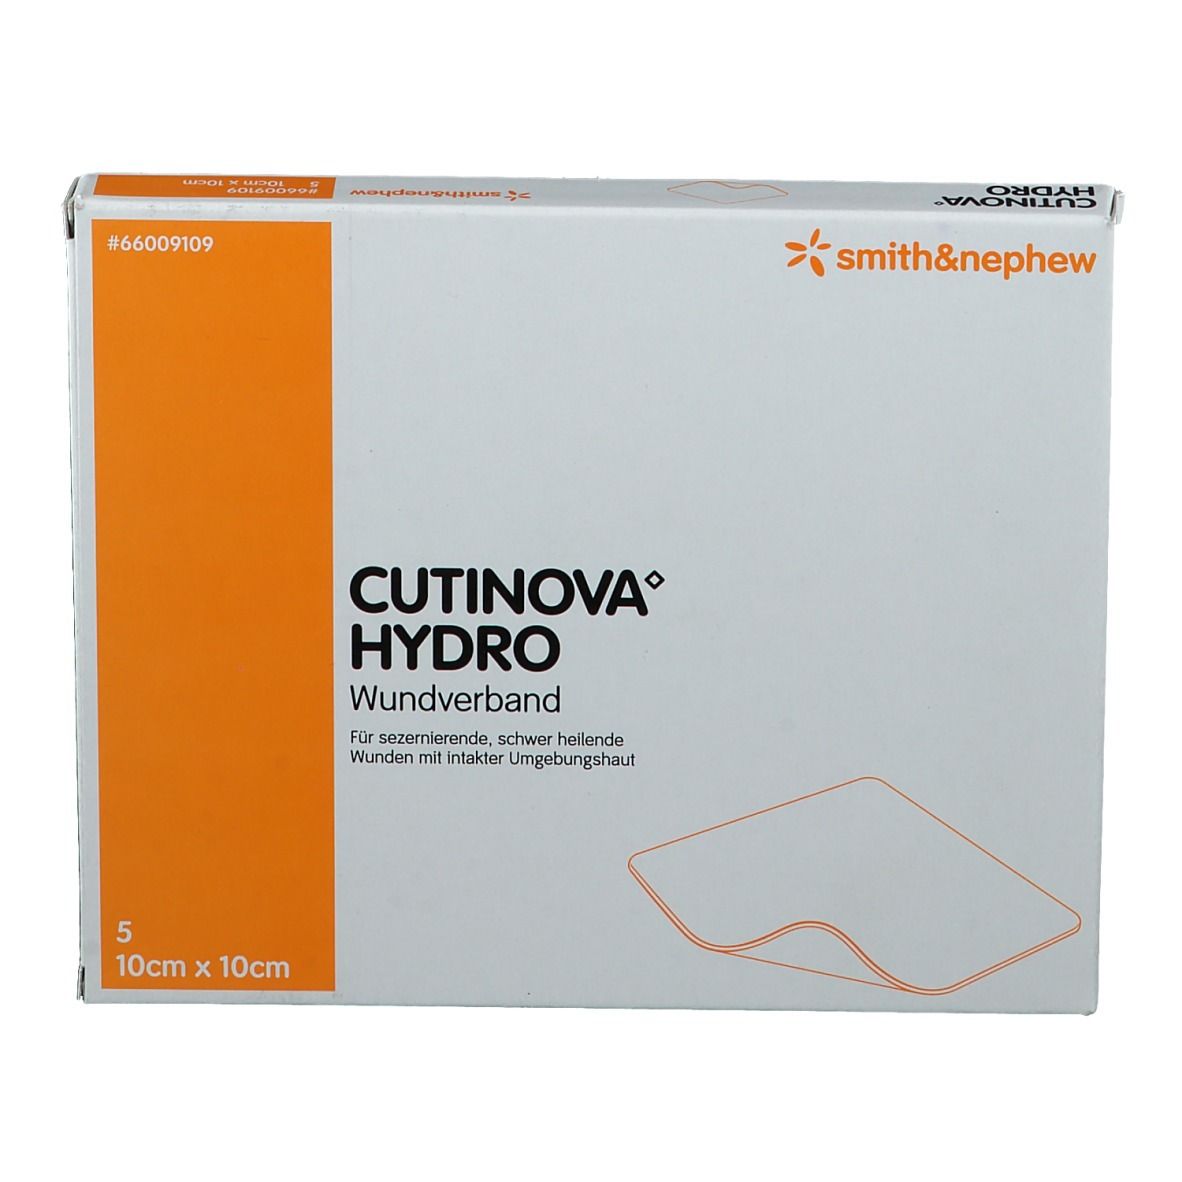 CUTINOVA® Hydro haftende Wundauflage 10x10cm steril